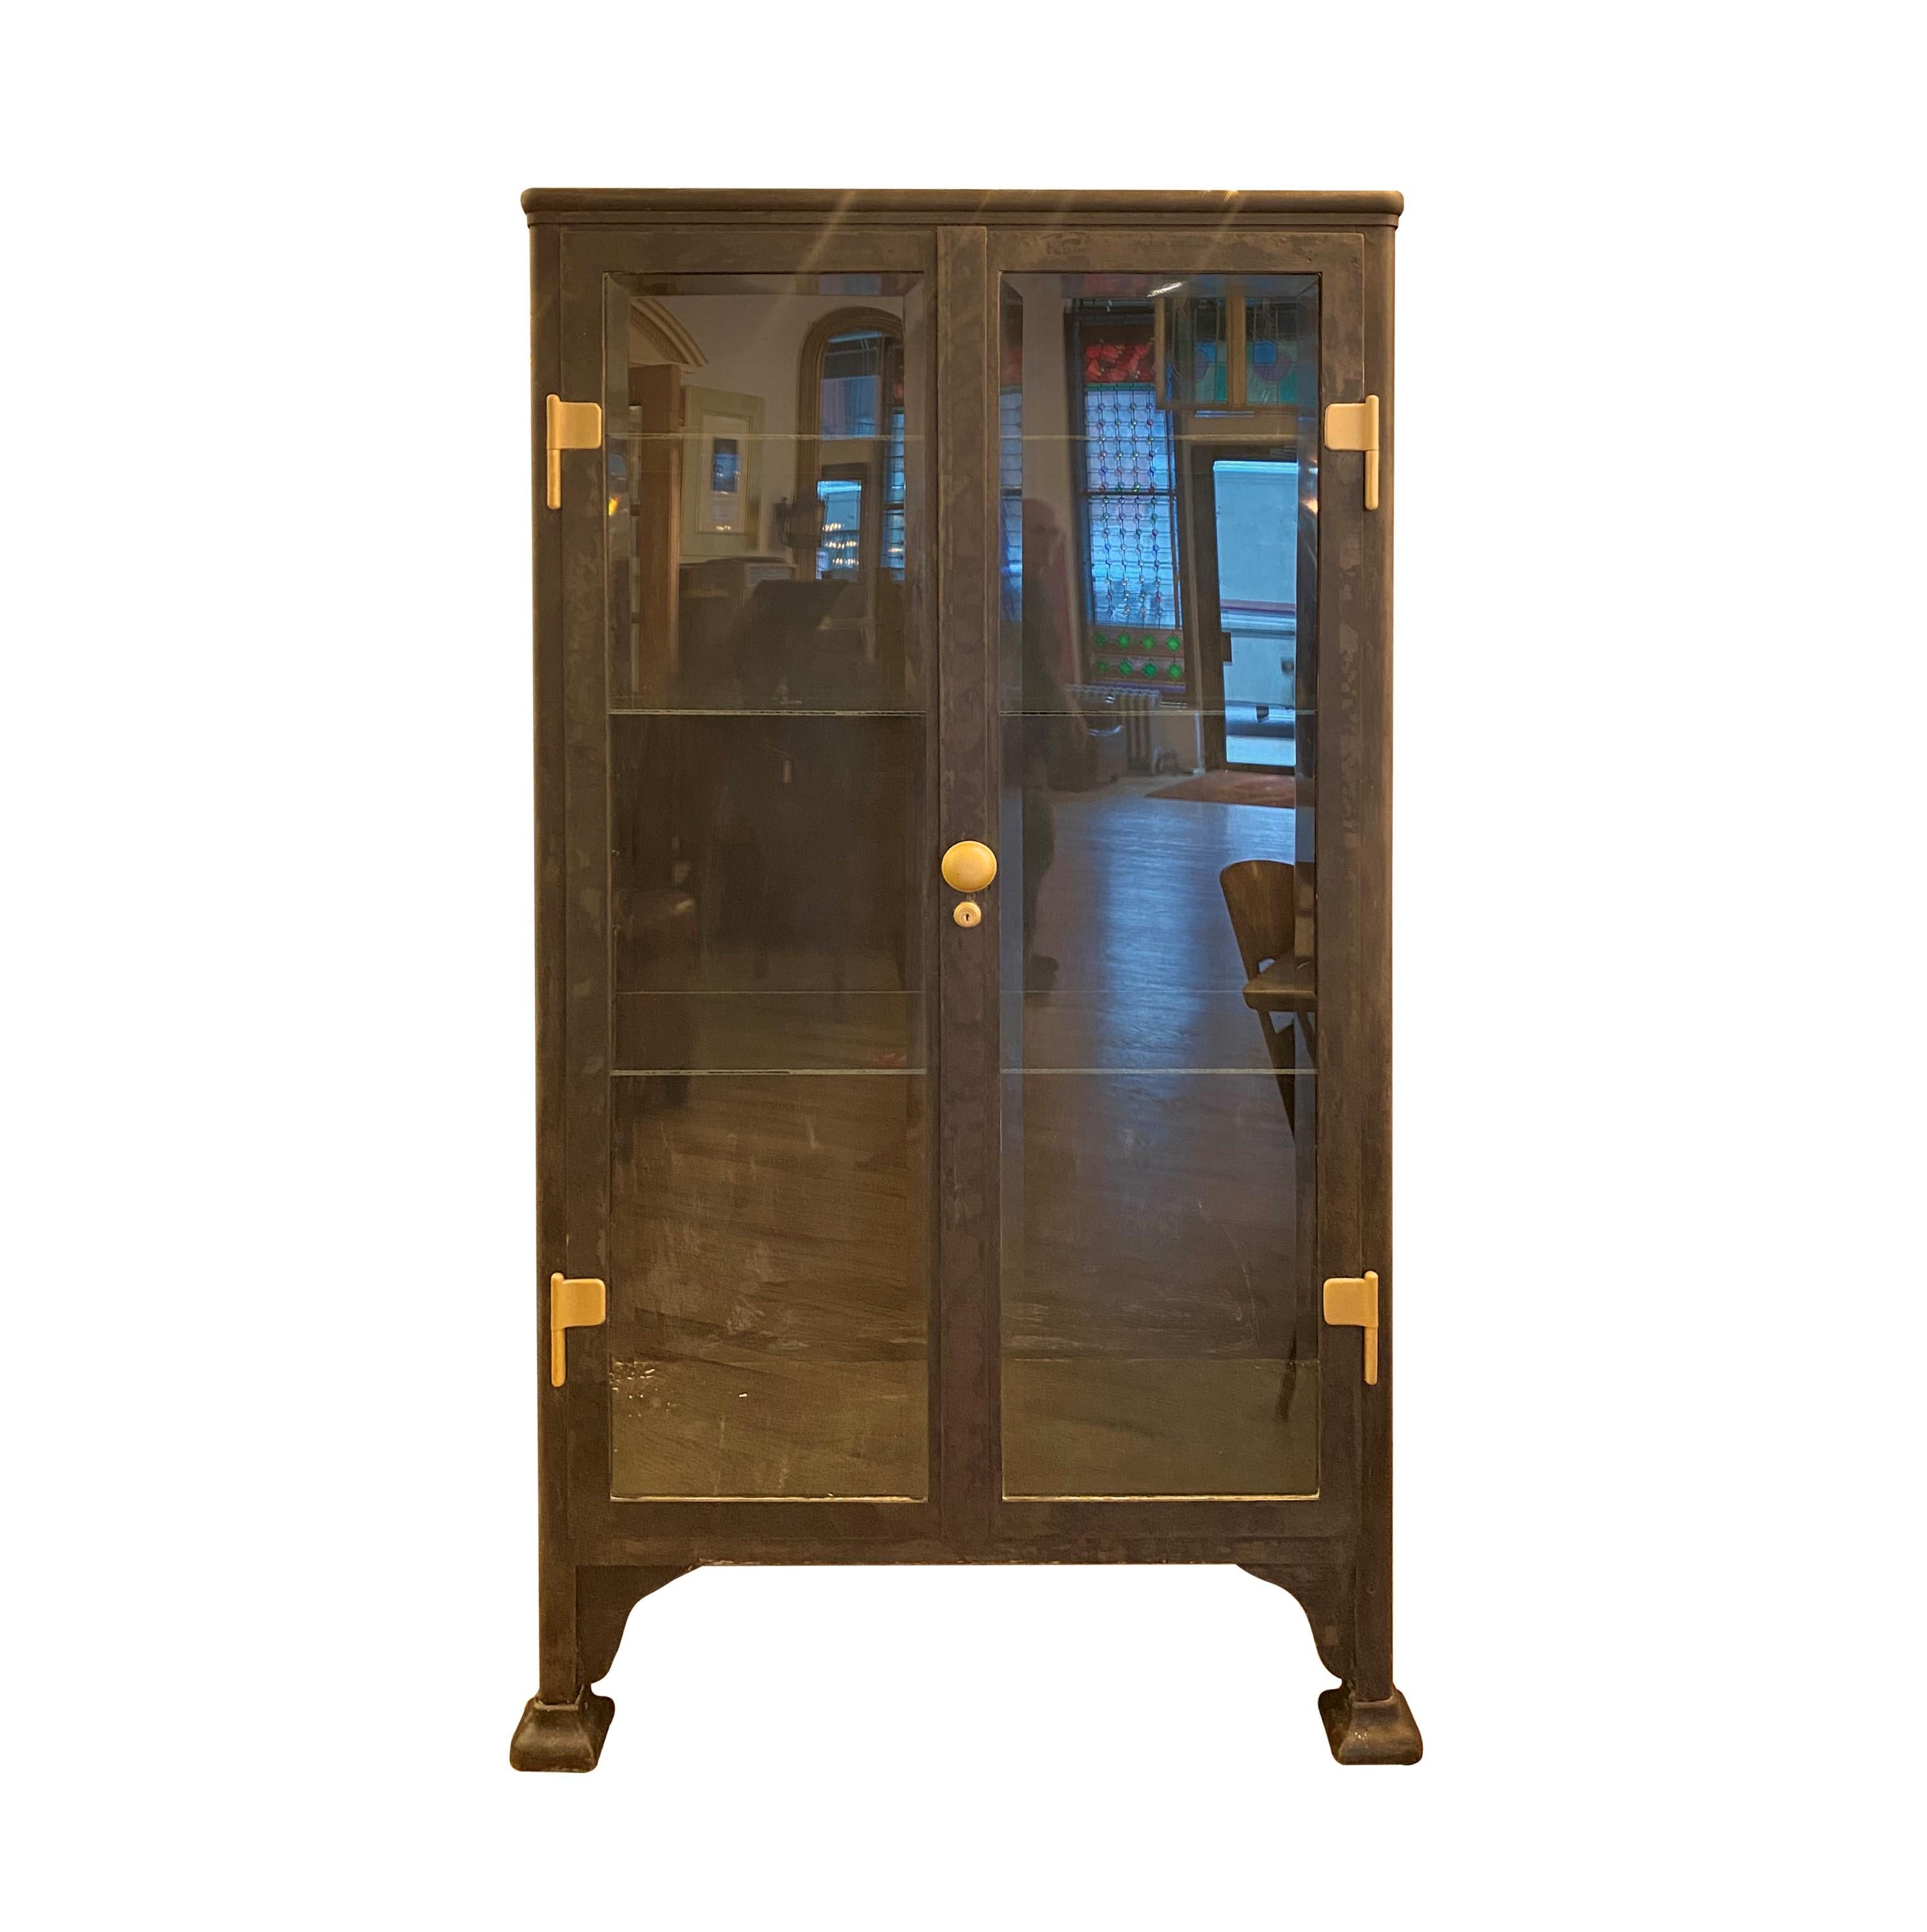 Antiker 1020er Gusseisen Medizinschrank mit Doppeltür und Rollen. Mit vier Glasböden und  abgeschrägte Glastüren und Seitenwände. Wird mit den Türbeschlägen aus gebürstetem Messing geliefert.  Bitte beachten Sie, dass sich dieser Artikel an einem